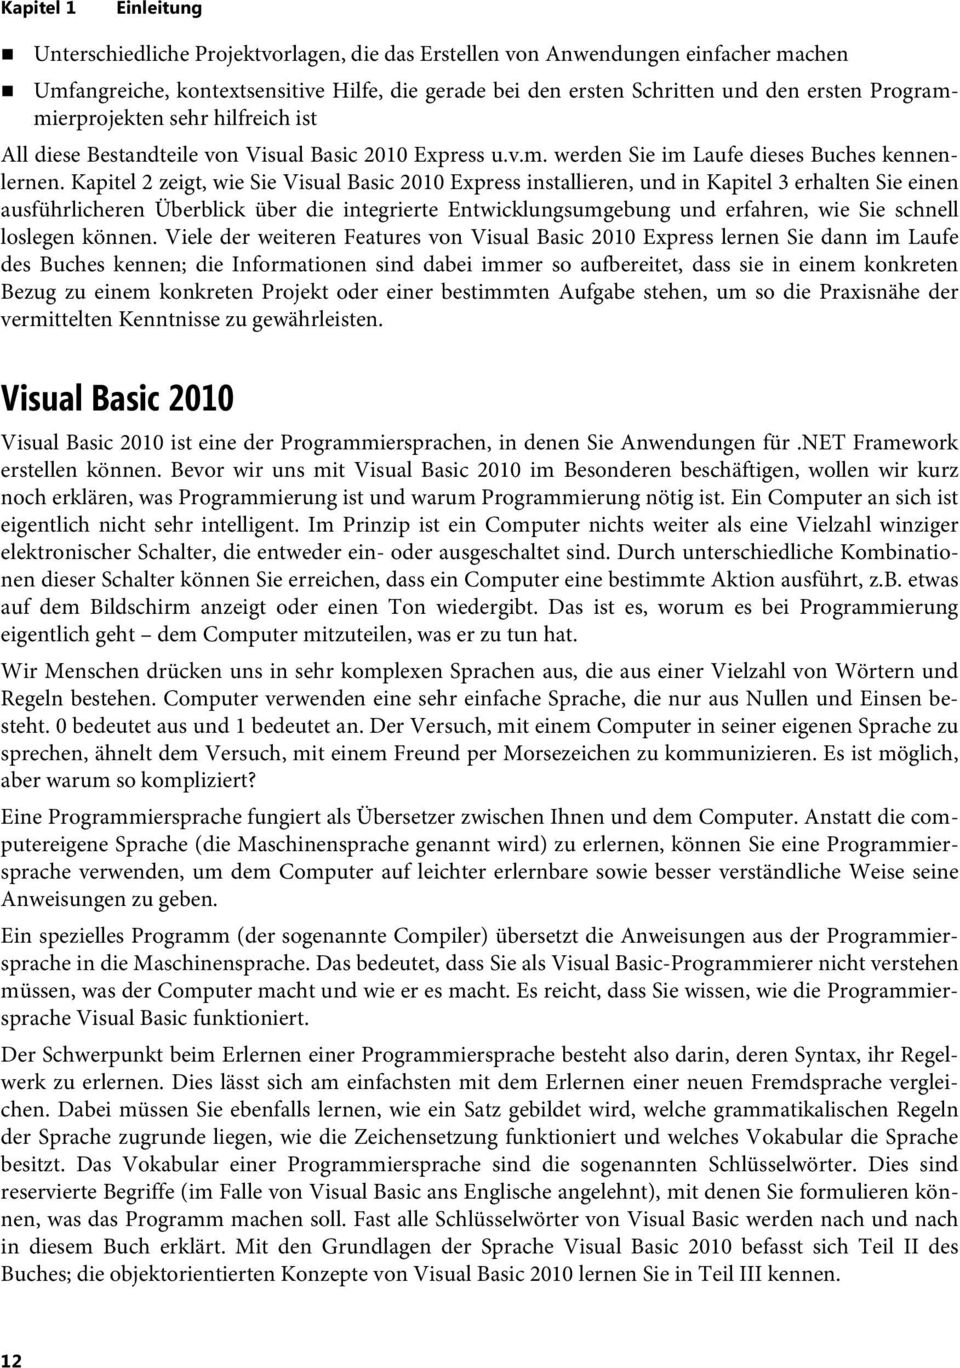 Kapitel 2 zeigt, wie Sie Visual Basic 2010 Express installieren, und in Kapitel 3 erhalten Sie einen ausführlicheren Überblick über die integrierte Entwicklungsumgebung und erfahren, wie Sie schnell